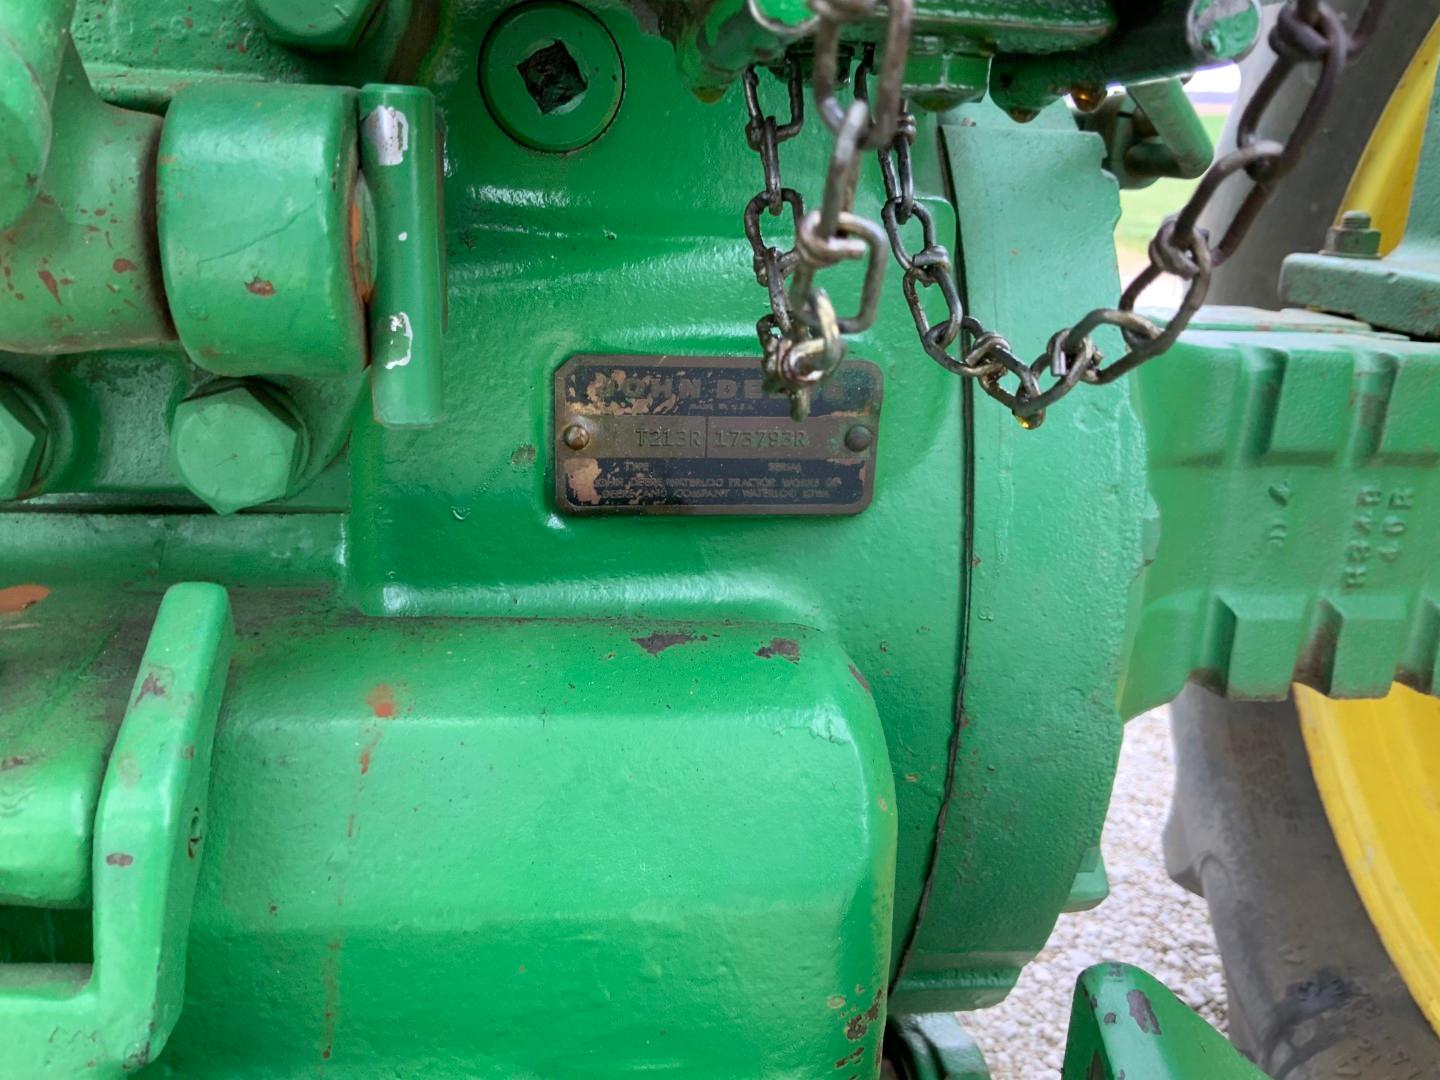 John Deere 4020 Diesel Tractor w/WF, frt. wts., 18.4-34 rubber 5314 hrs. (SN173793)